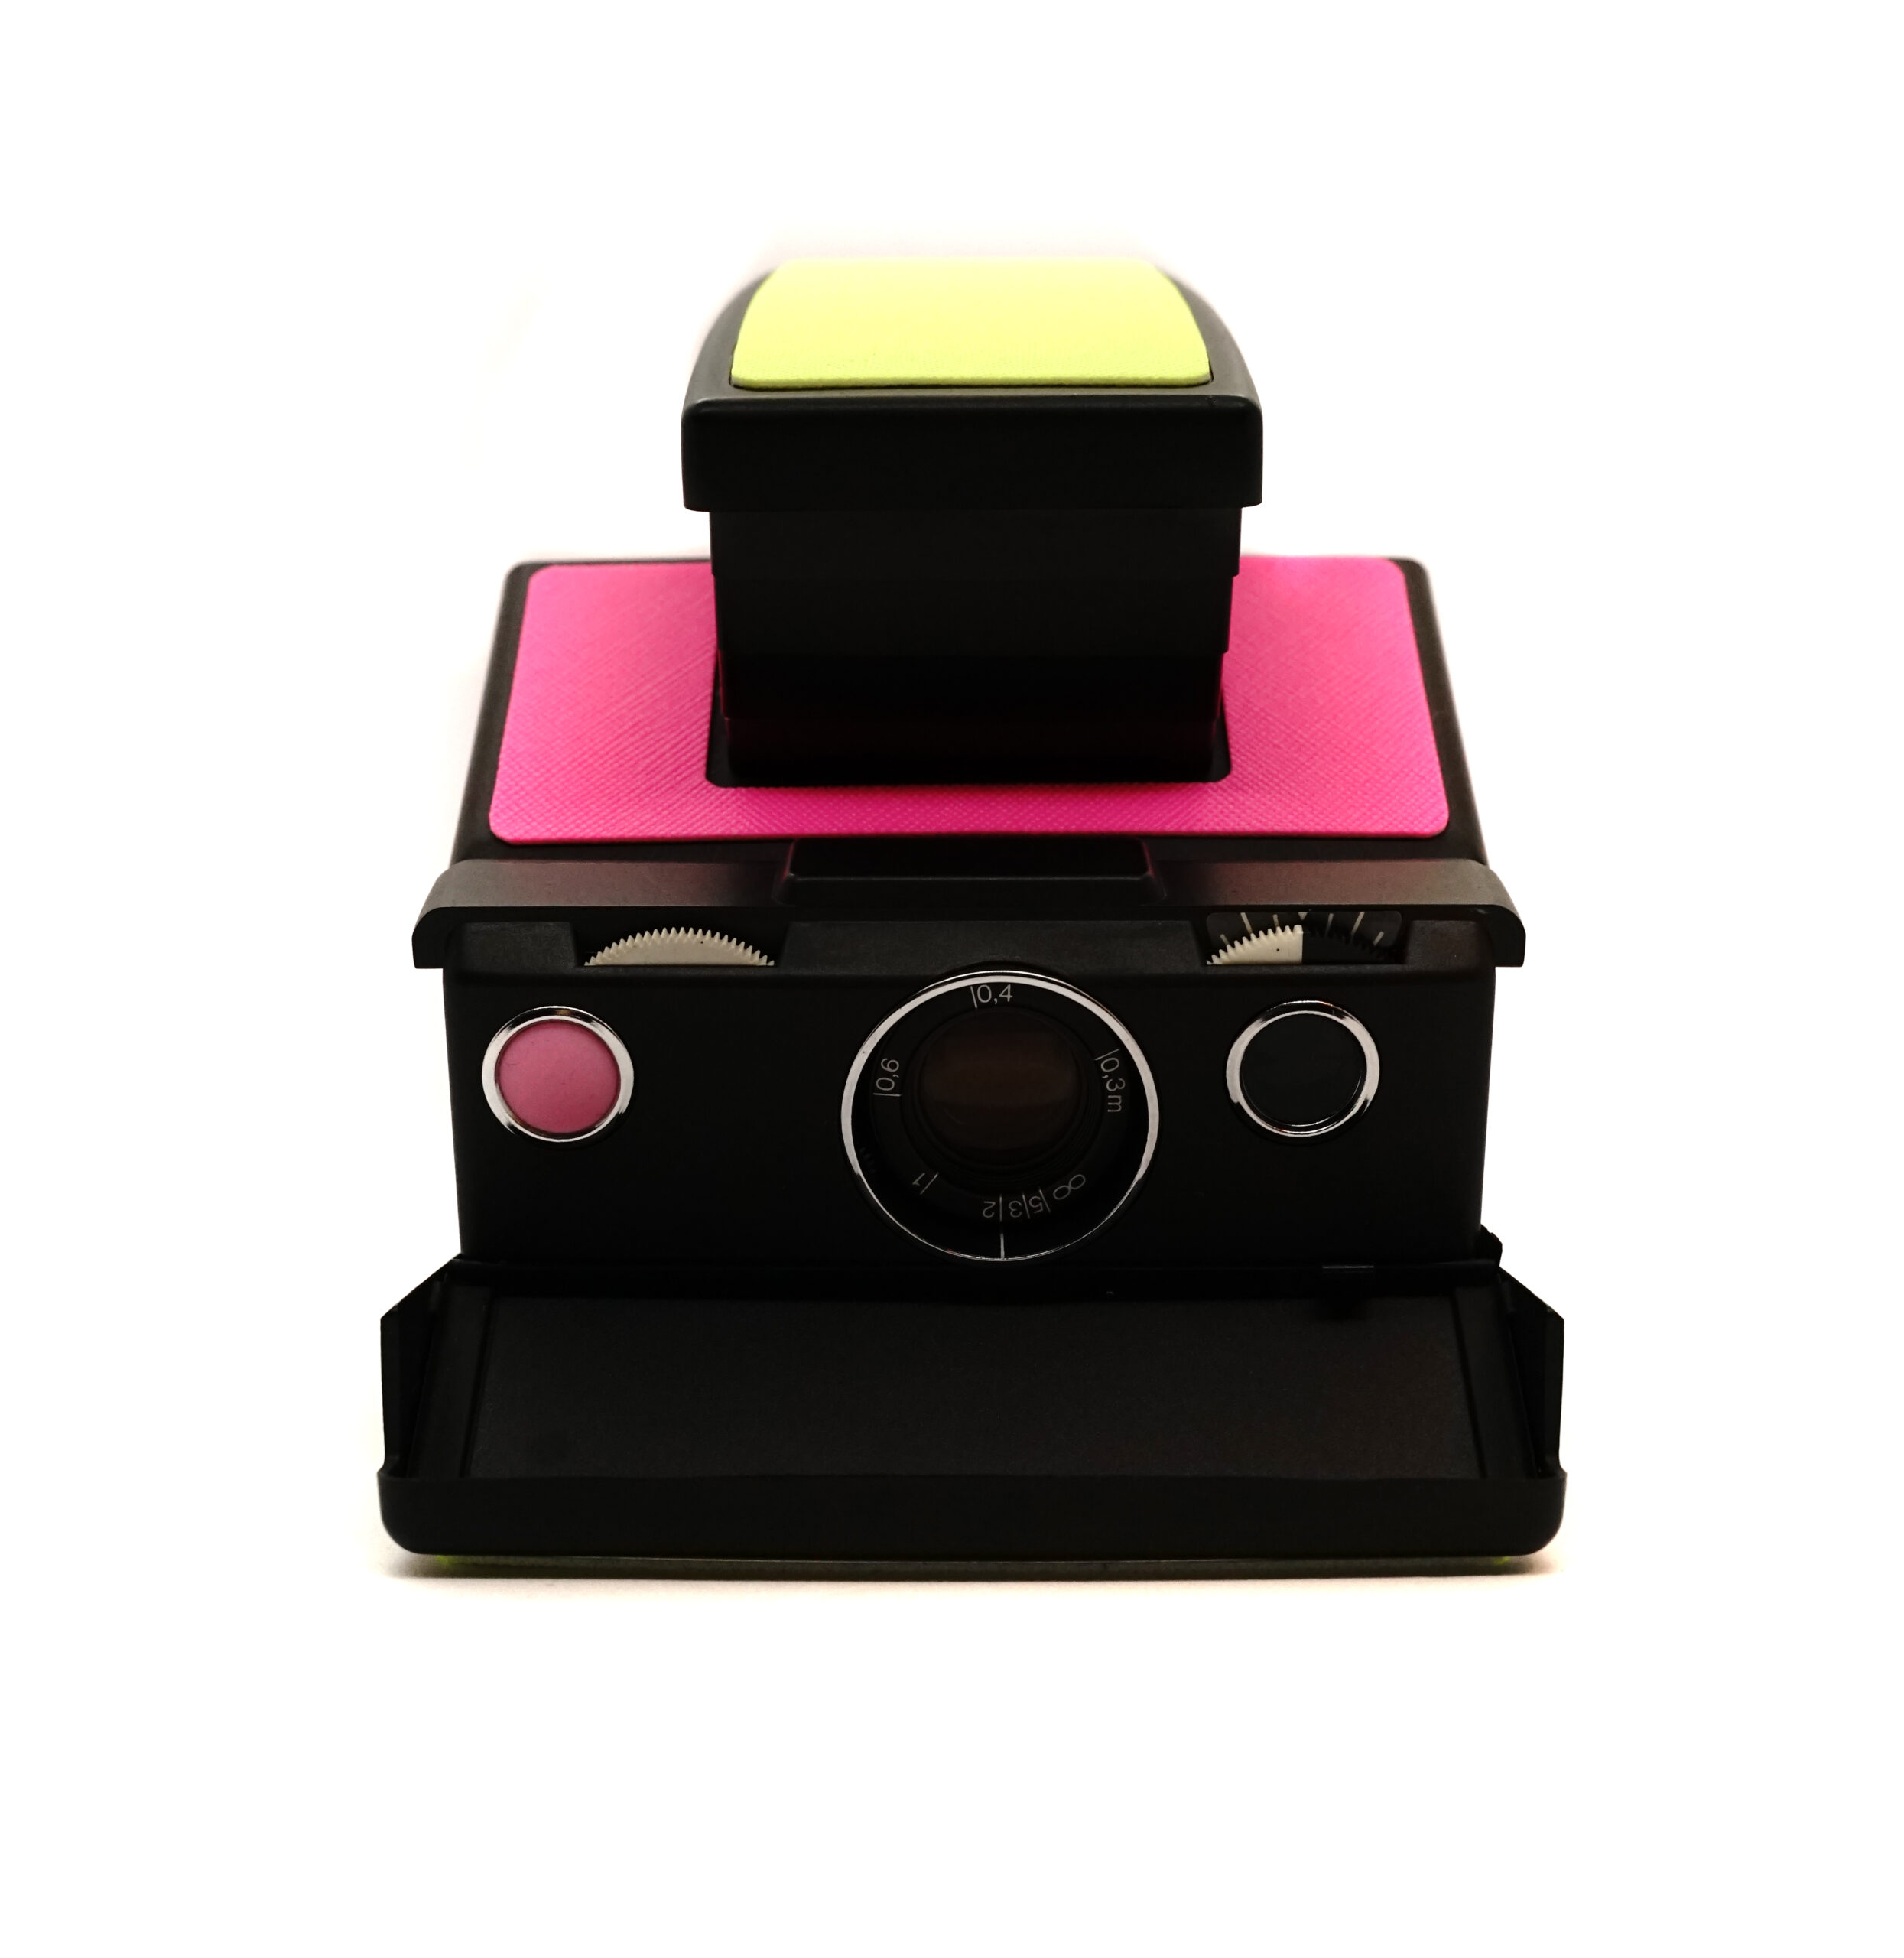 Aparat Polaroid SX-70 neon